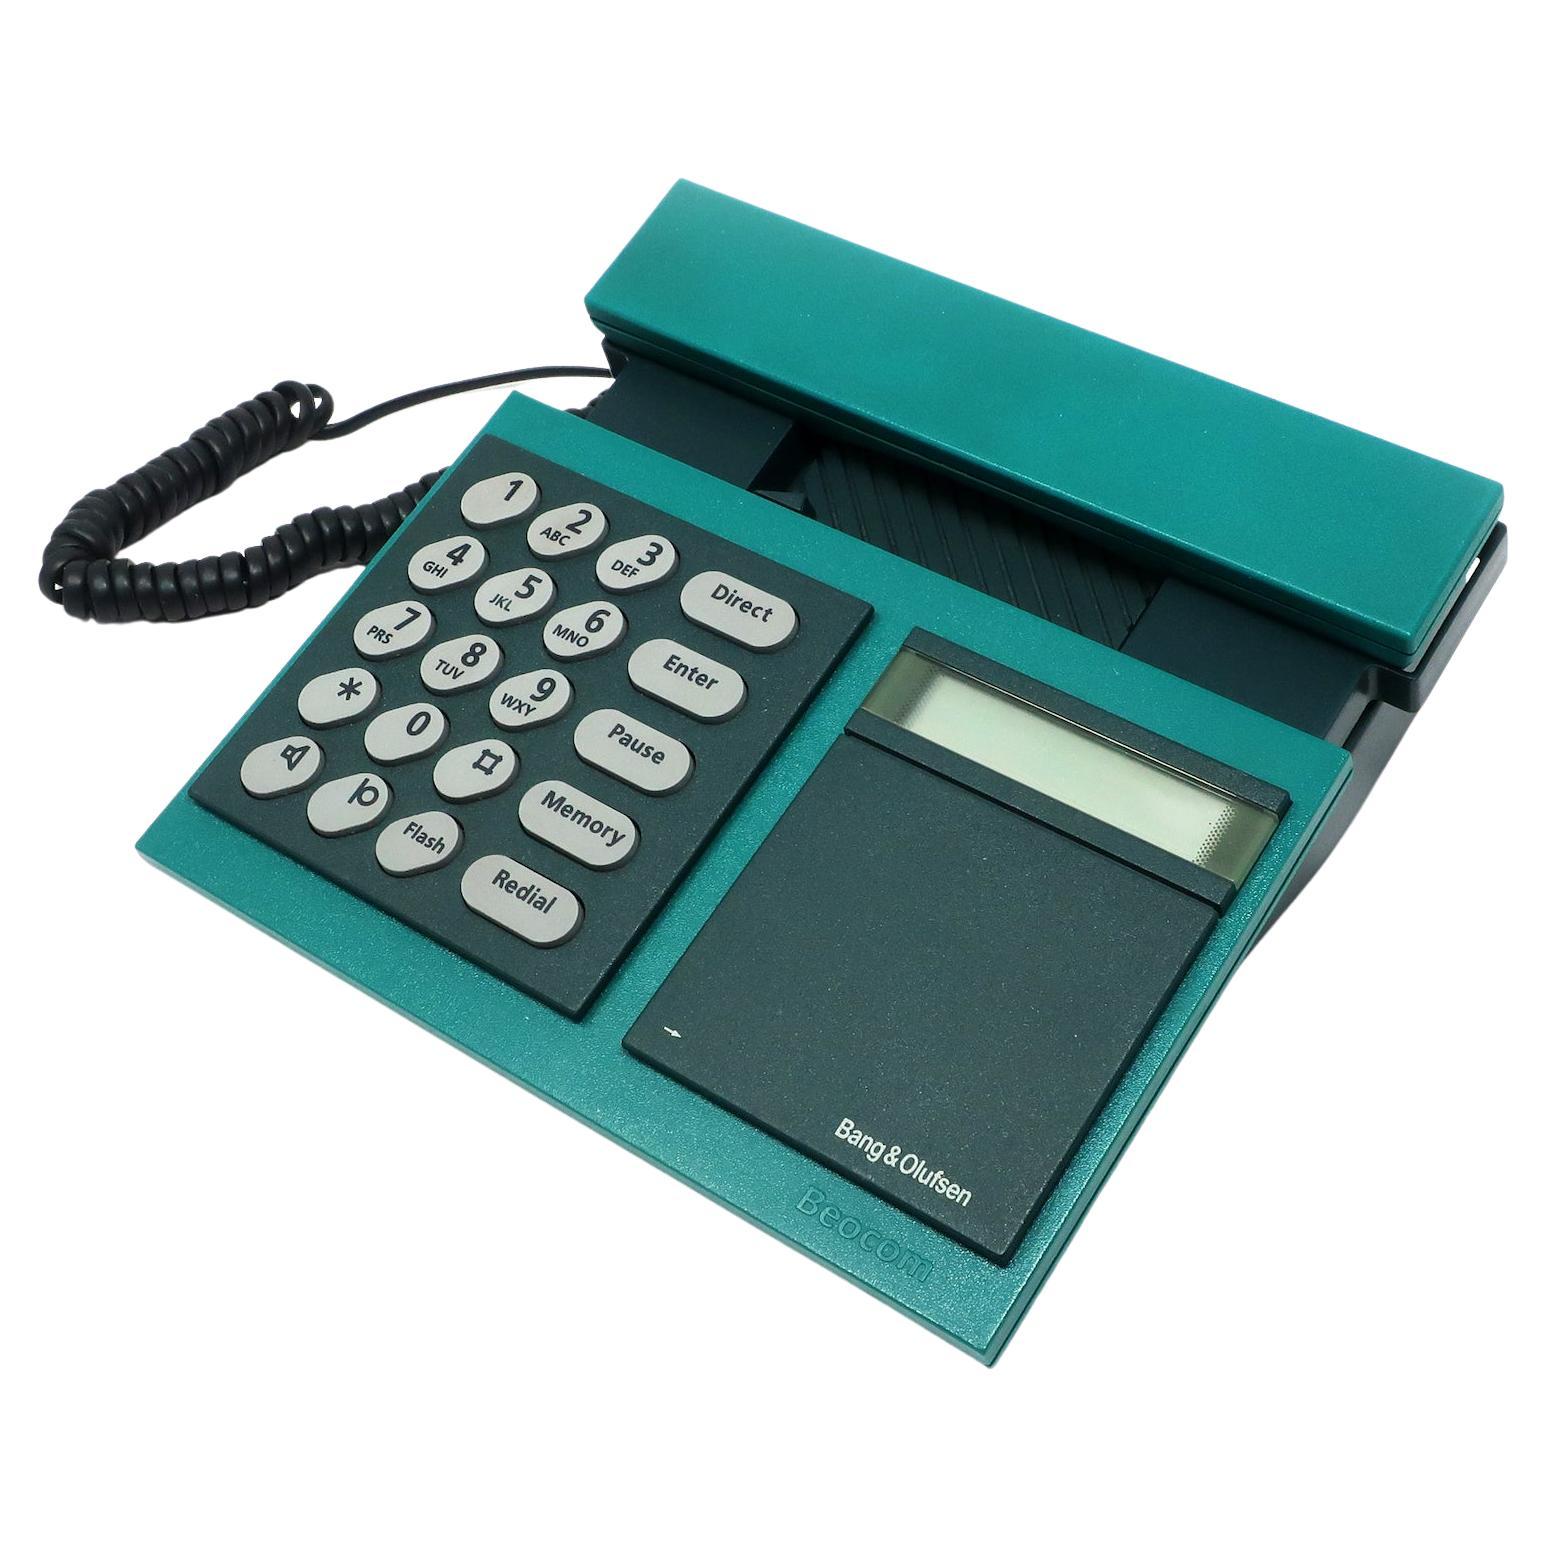 téléphone Beocom 2000 Bang & Olufsen des années 1980 en vente